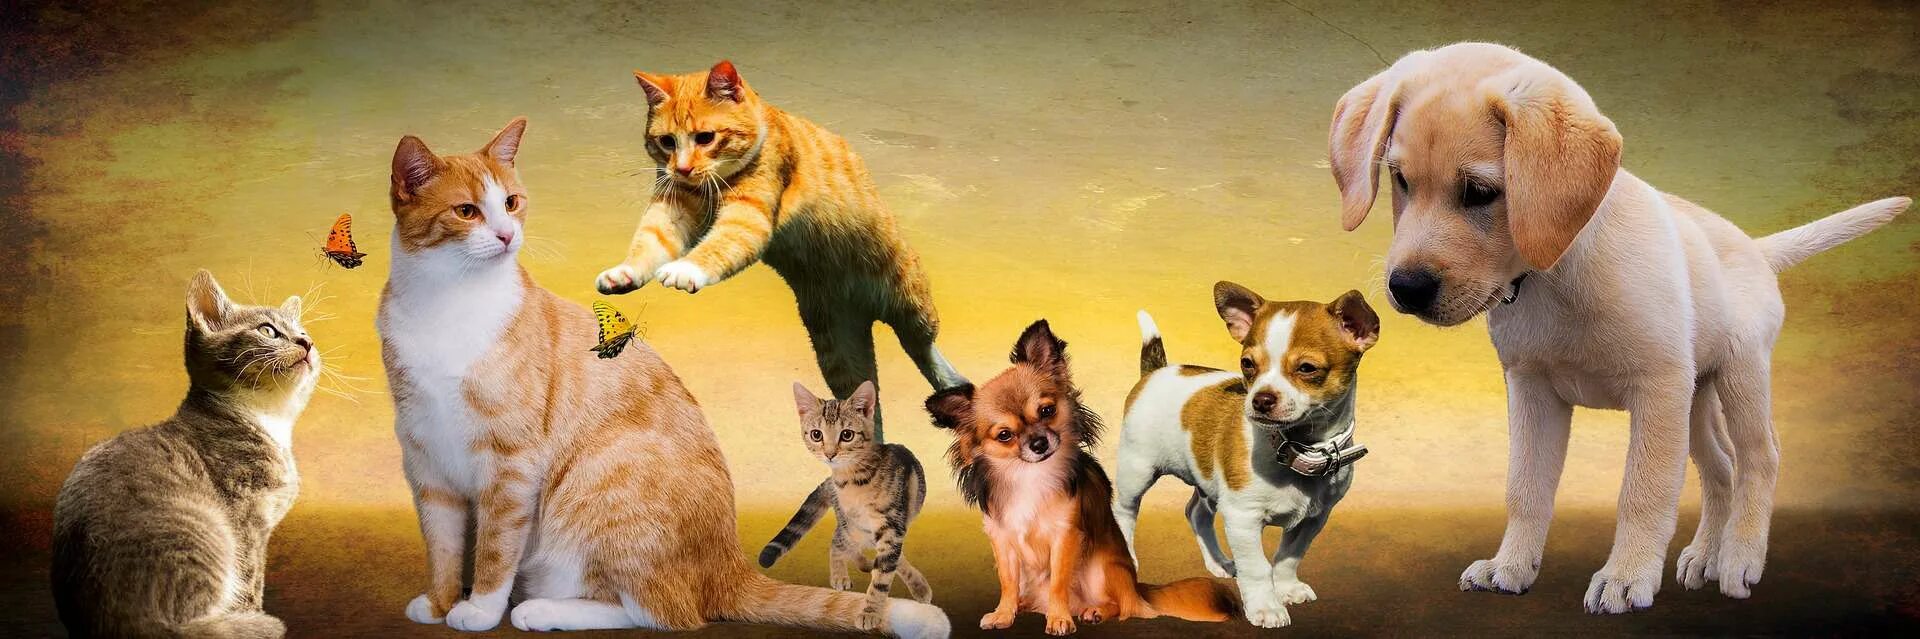 Cat in a dogs world. Rjireb b CJ,FRB. Кошки и собаки. Щенок и котенок. Фон для домашних животных.